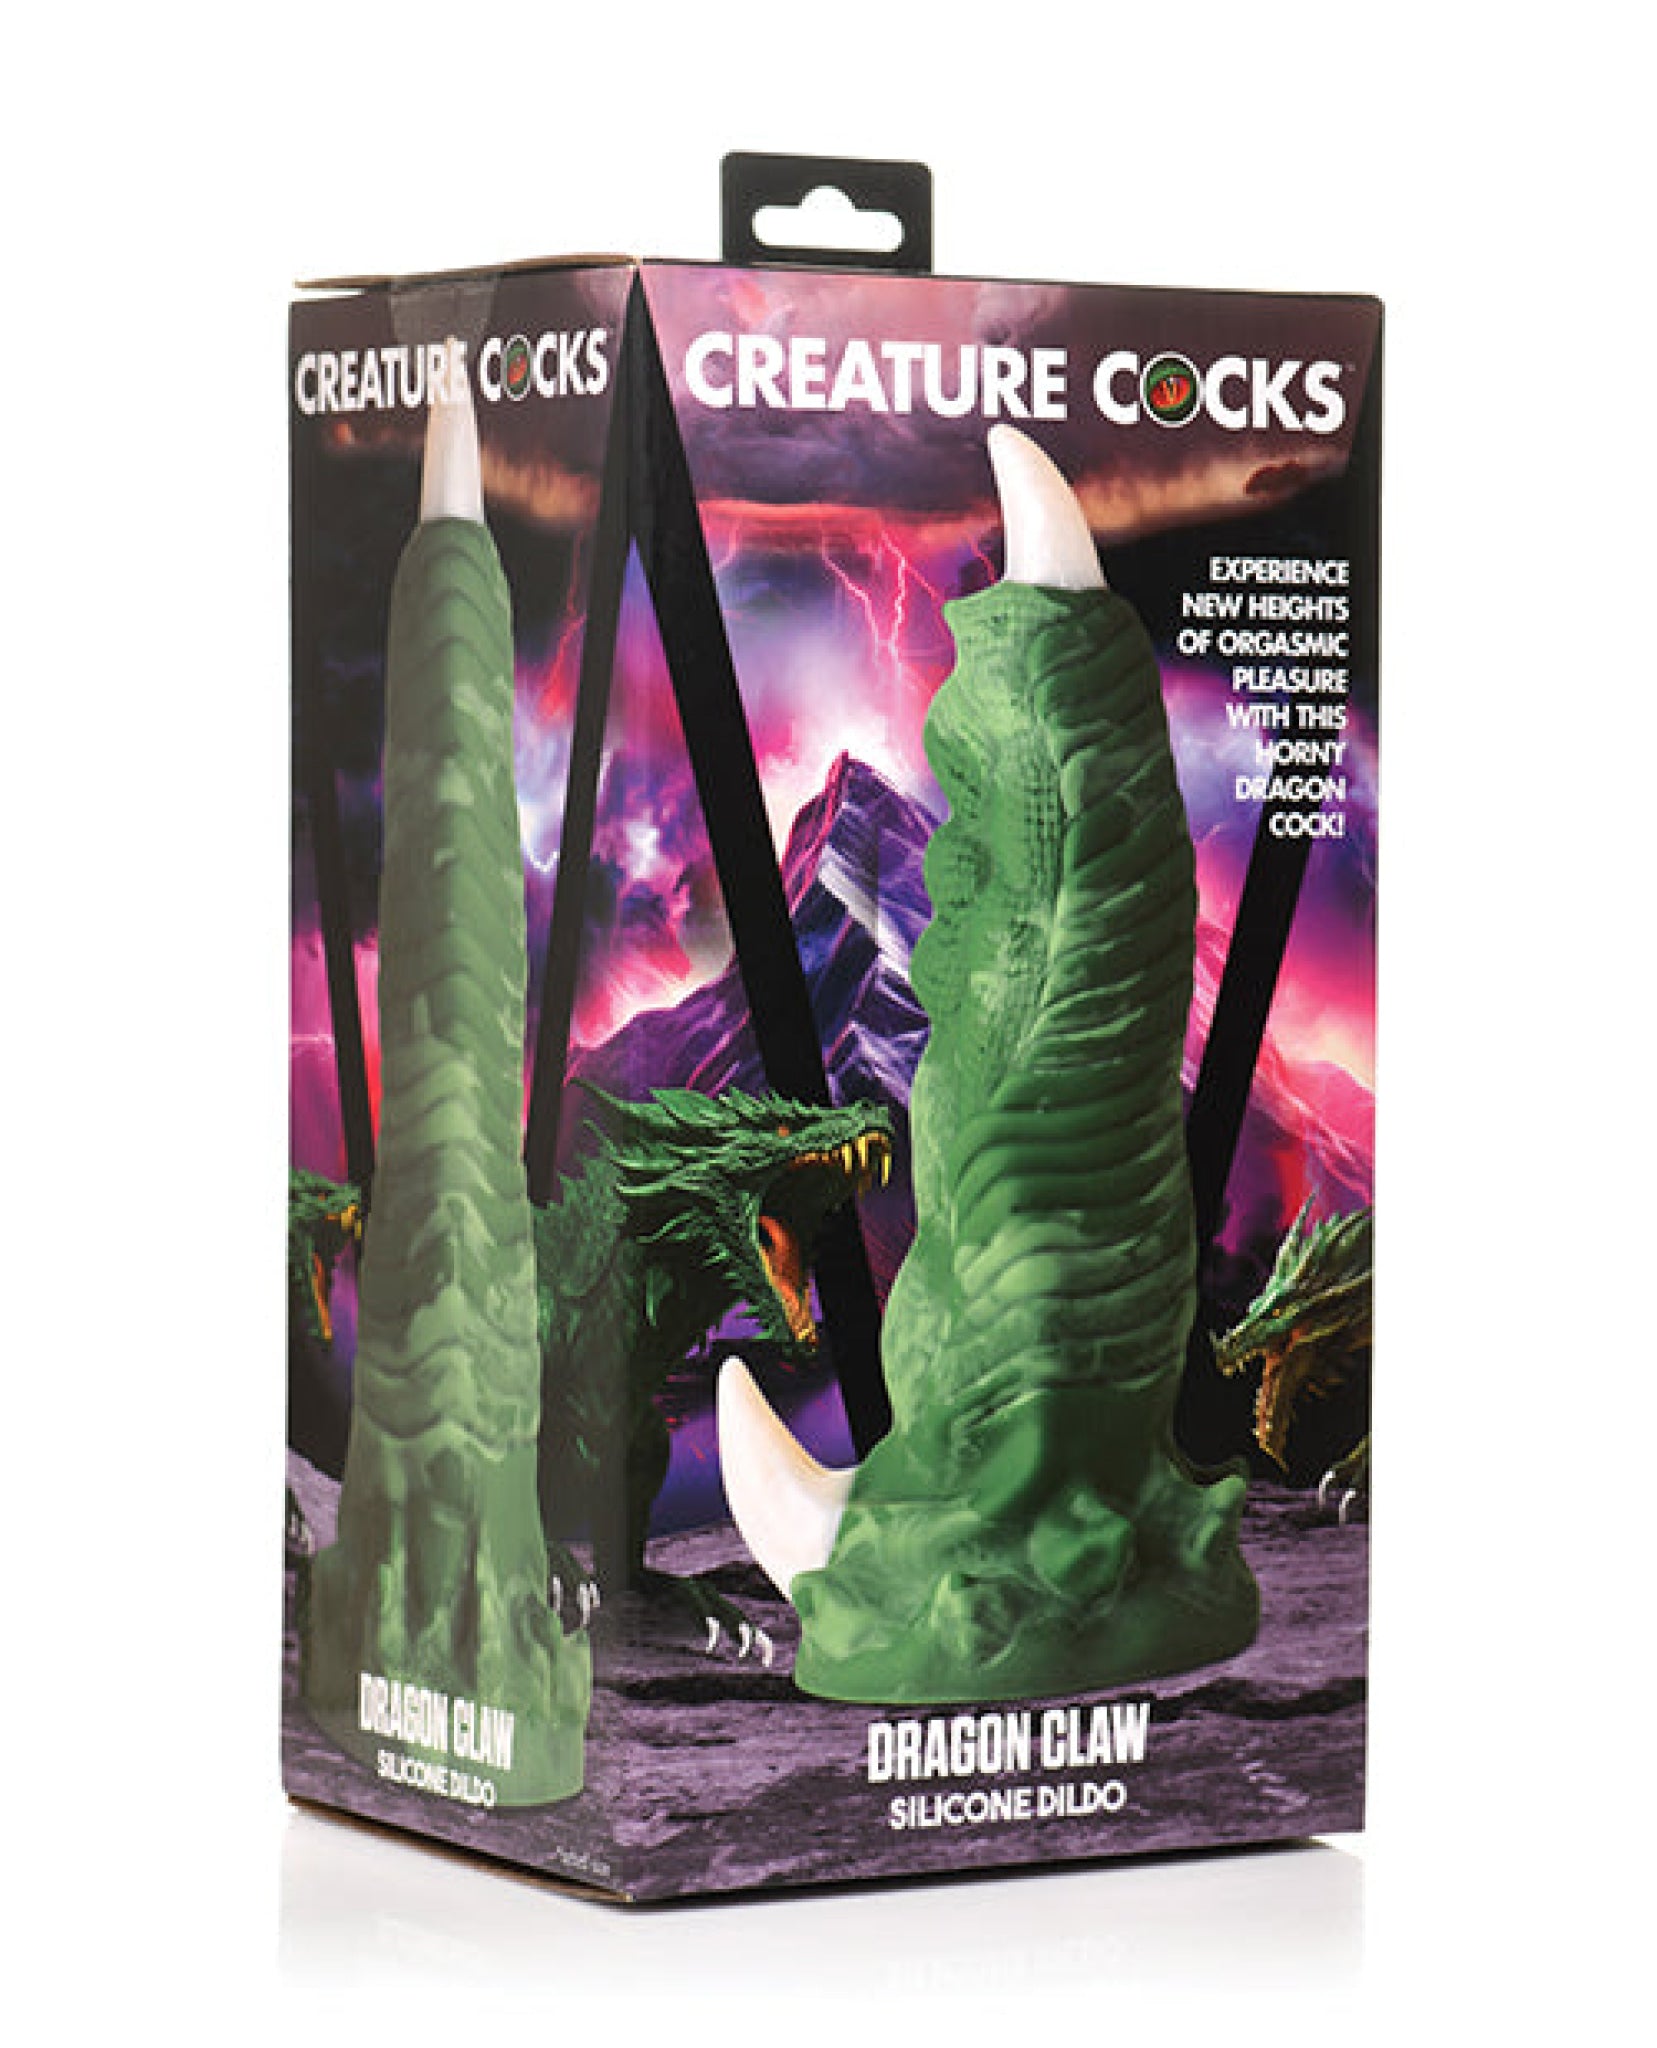 Creature Cocks Dragon Claw Silicone Dildo Xr LLC